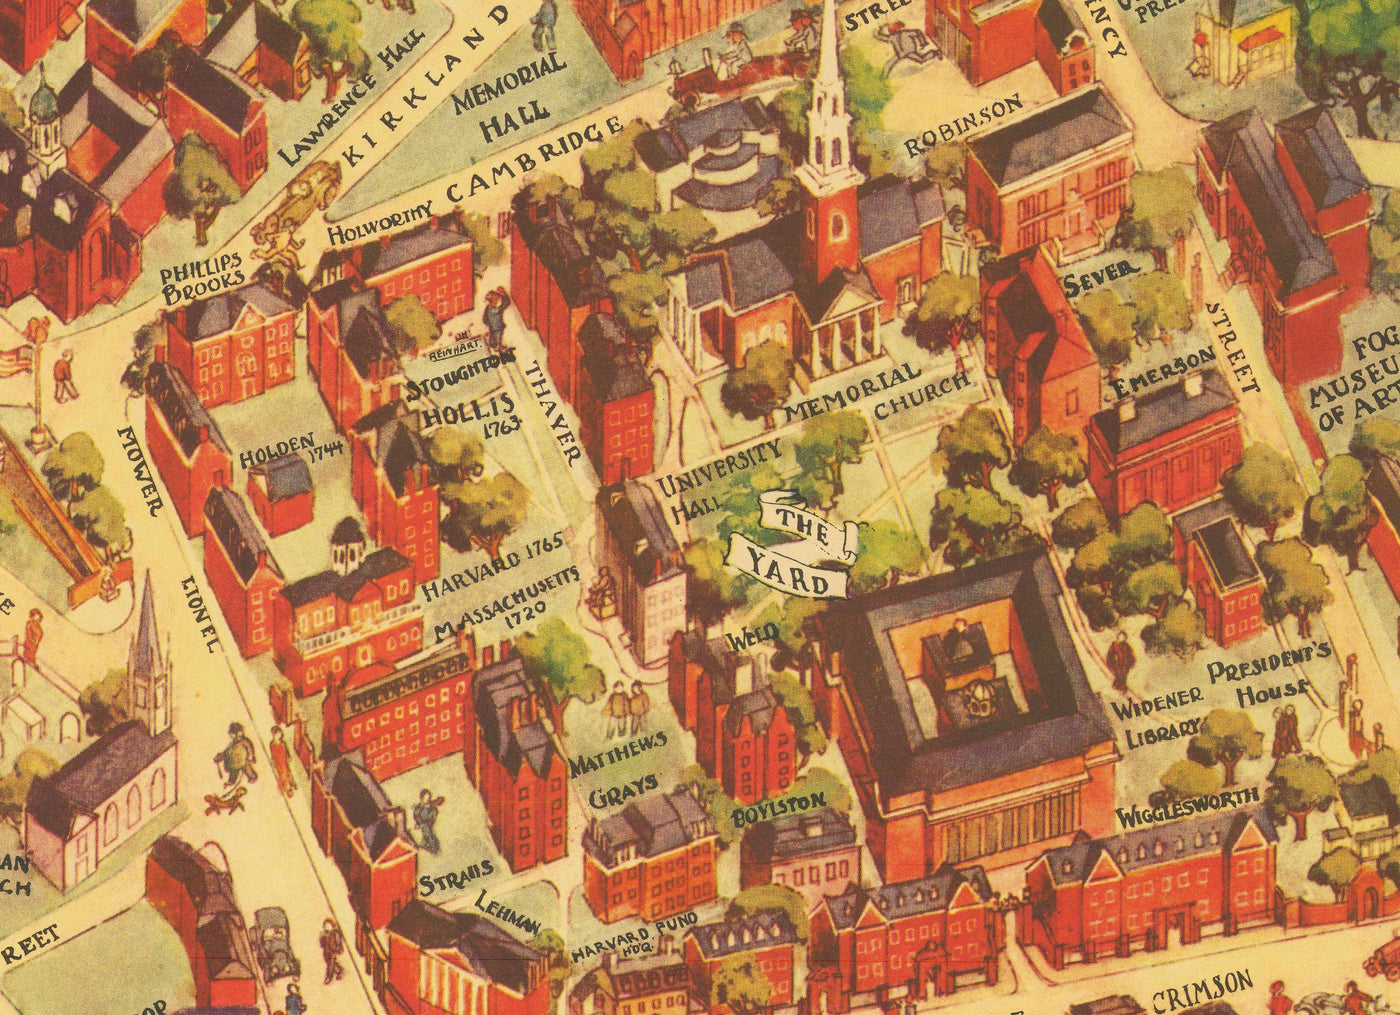 Ancienne carte de l'université de Harvard et de Radcliffe, 1935 par Schruers - Campus, armoiries de la maison, Charles River